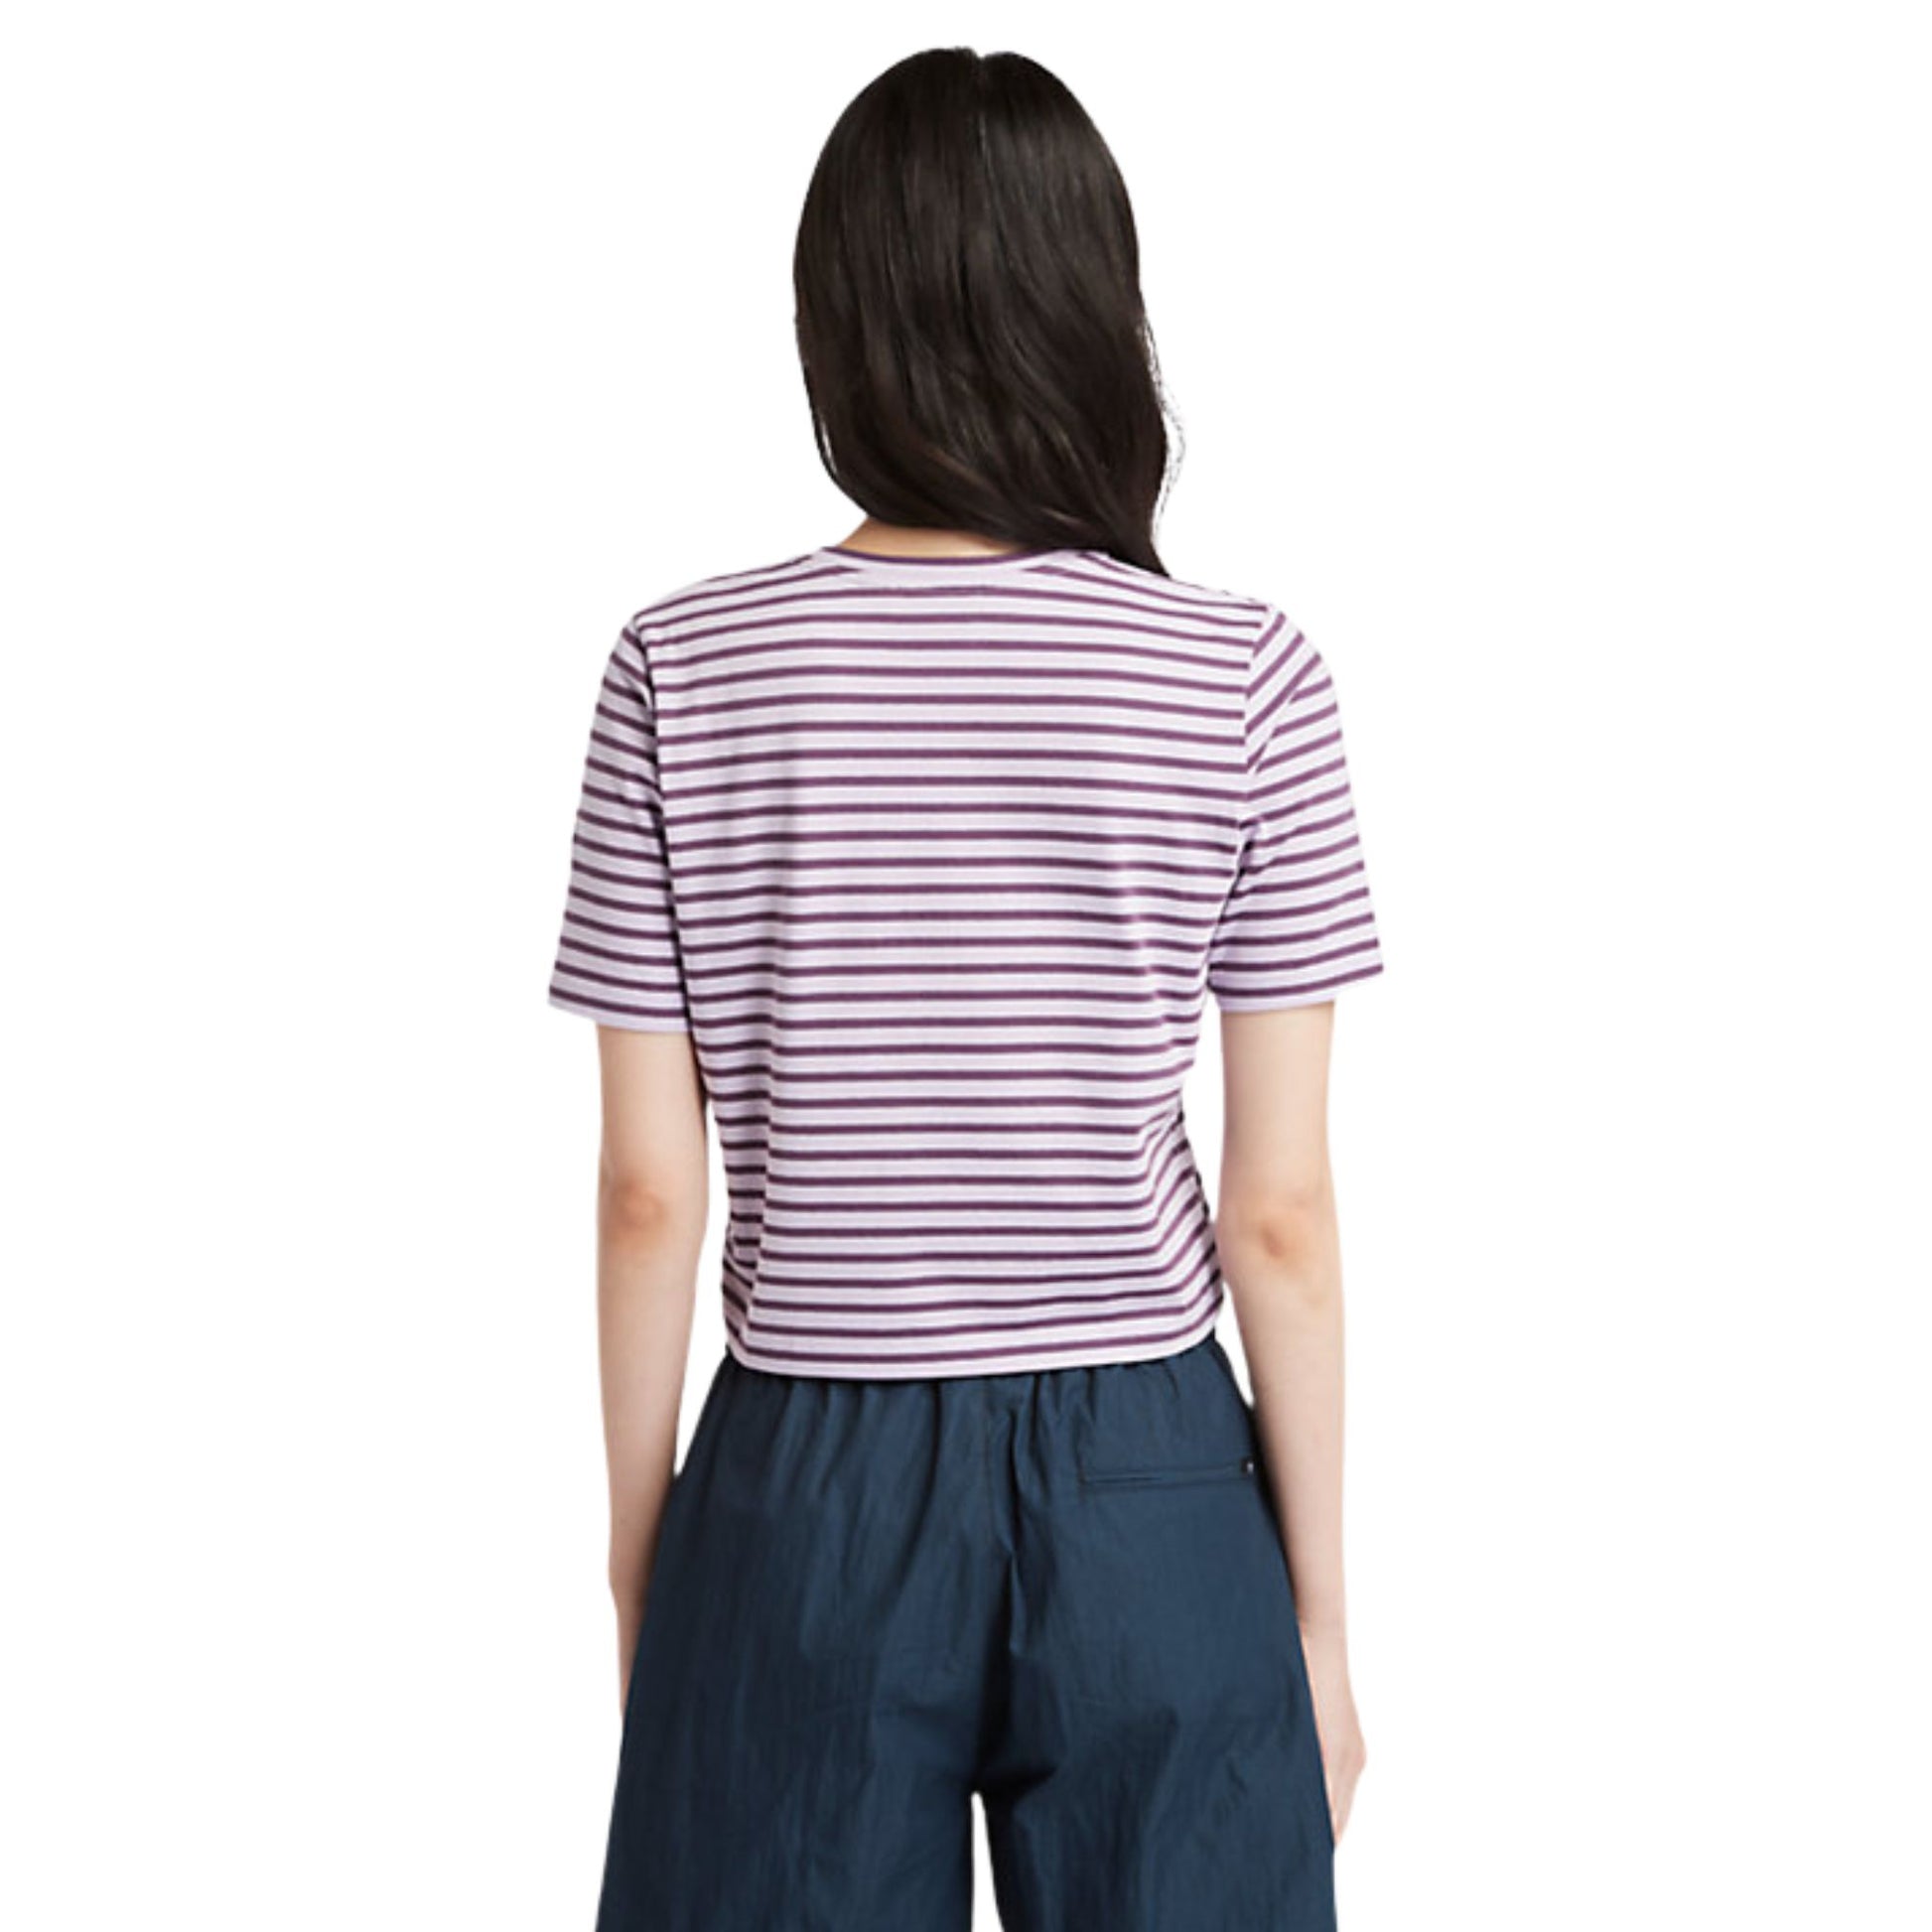 Retro modella con T-shirt cropped con righe sottili colore Viola